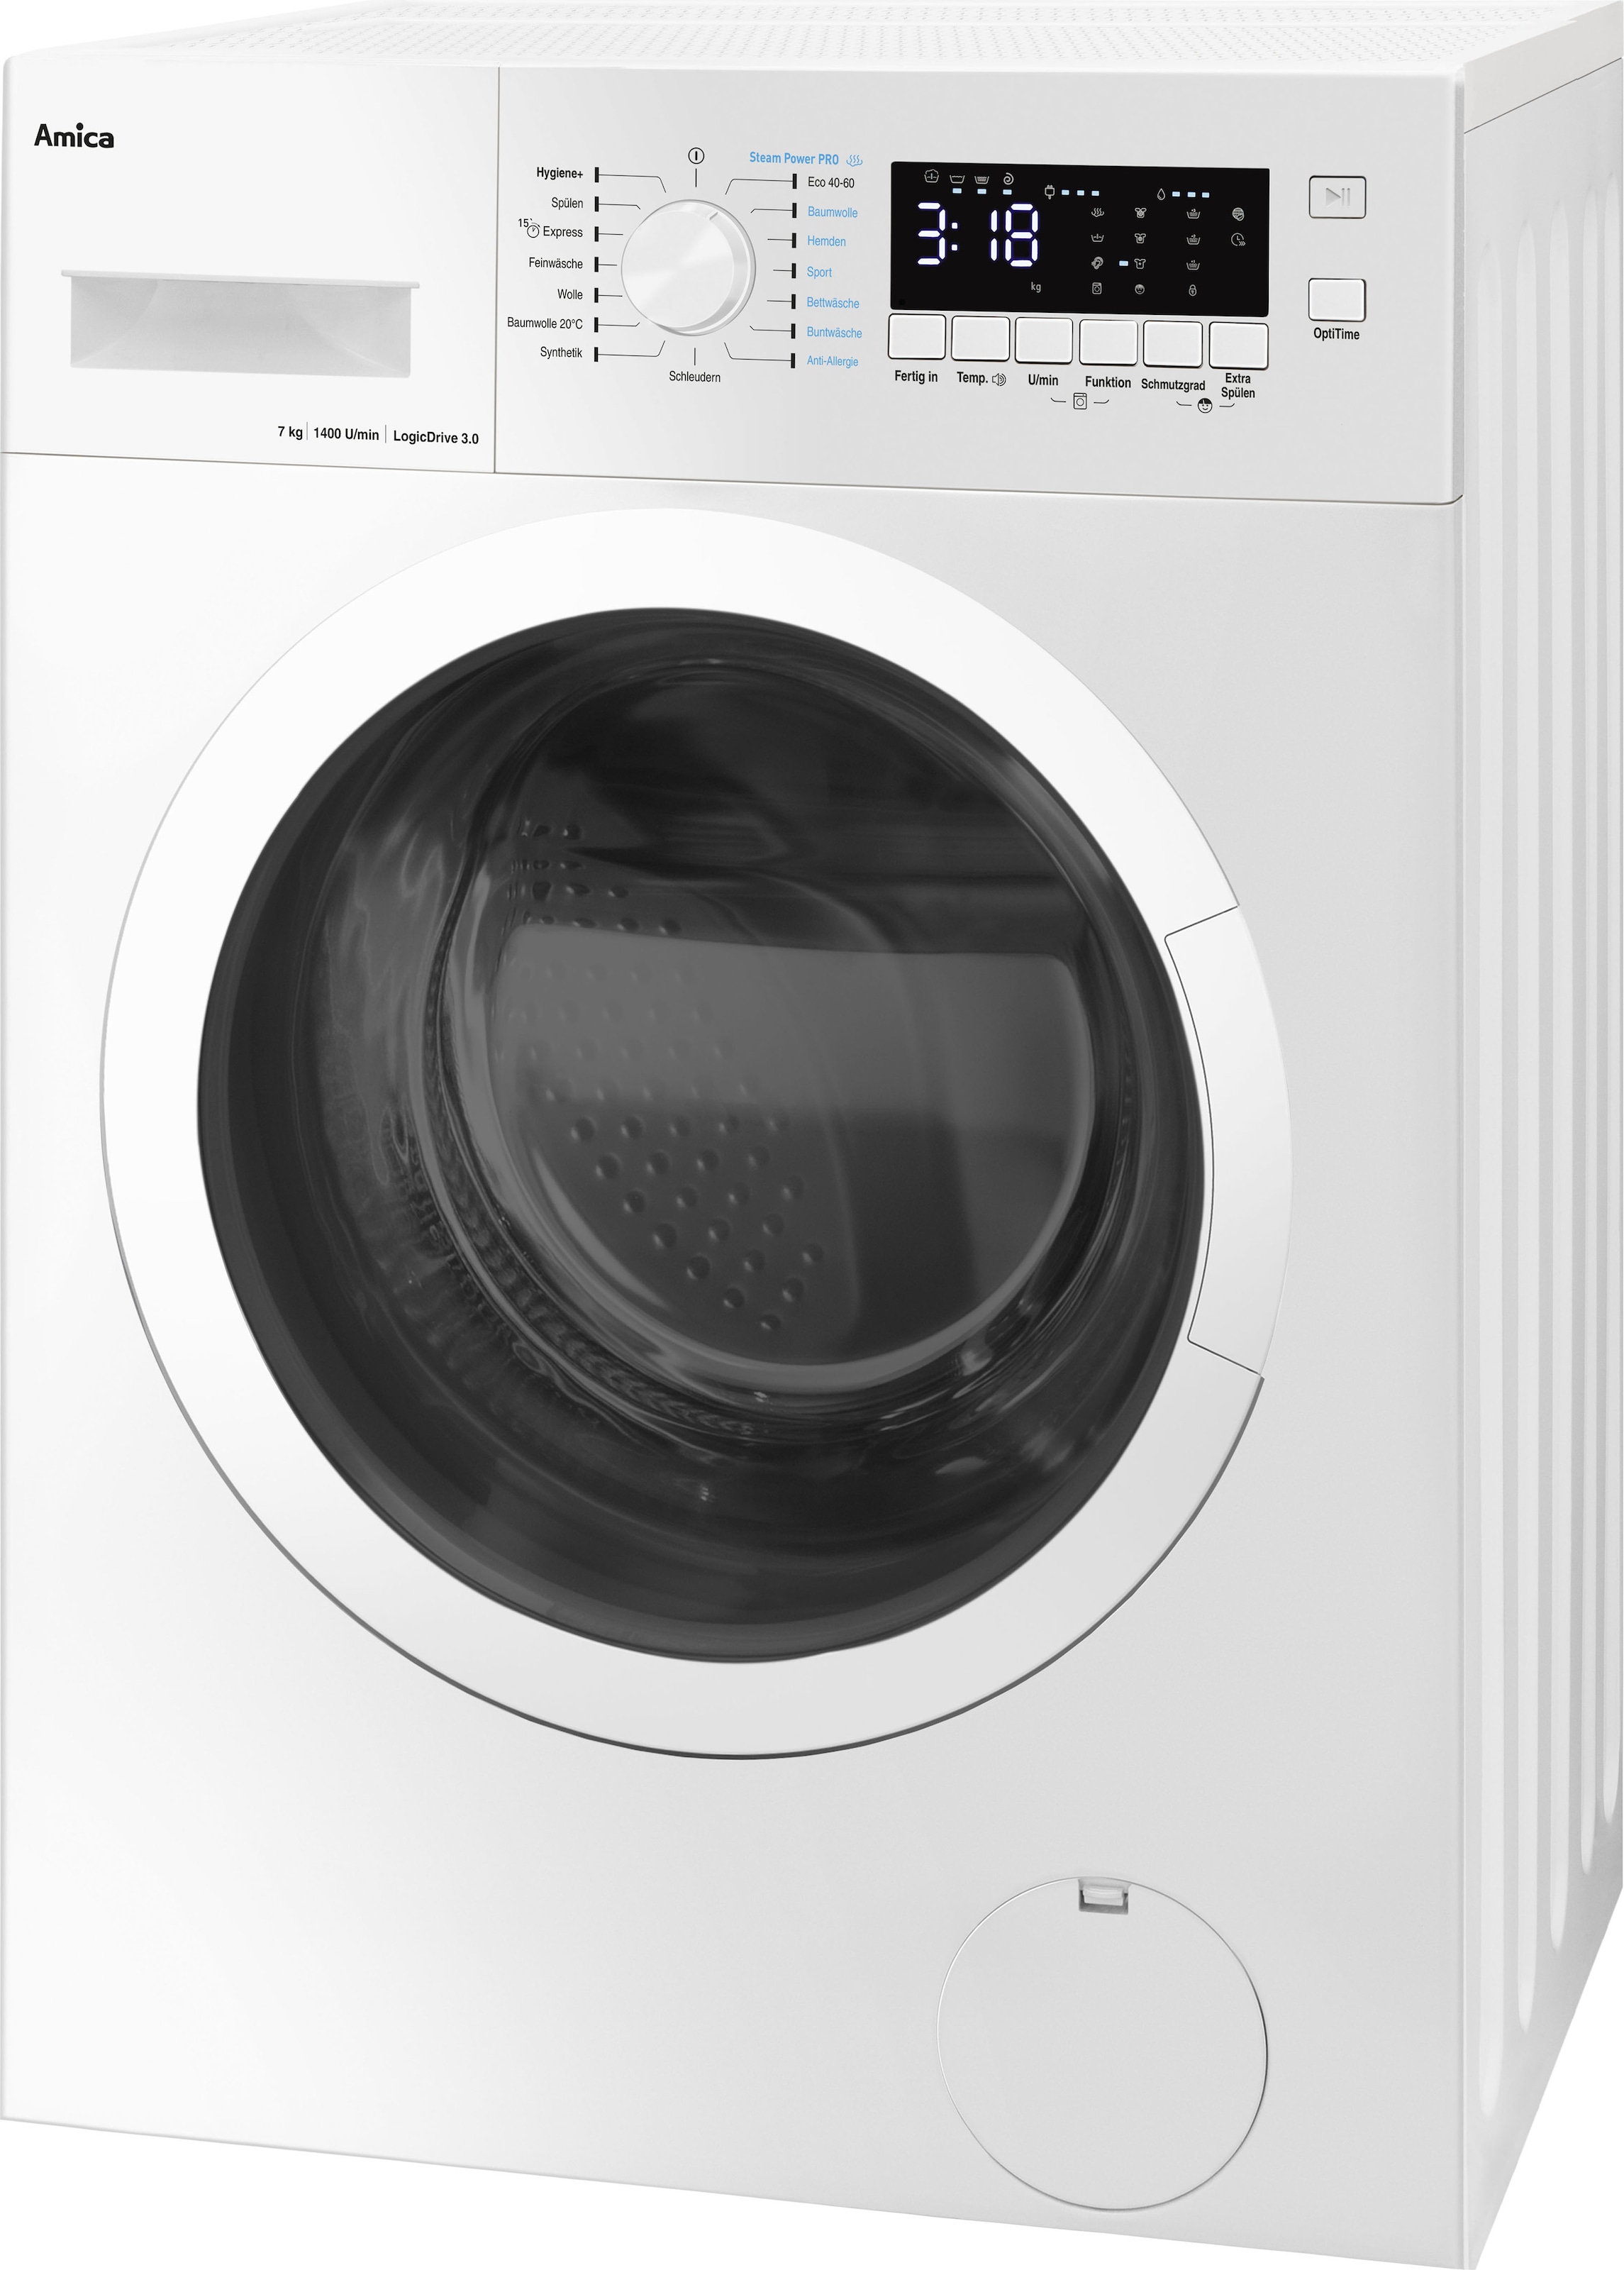 Garantie »WA 082, mit WA kg, Amica 1400 XXL 3 082«, Waschmaschine 474 Jahren U/min 7 474